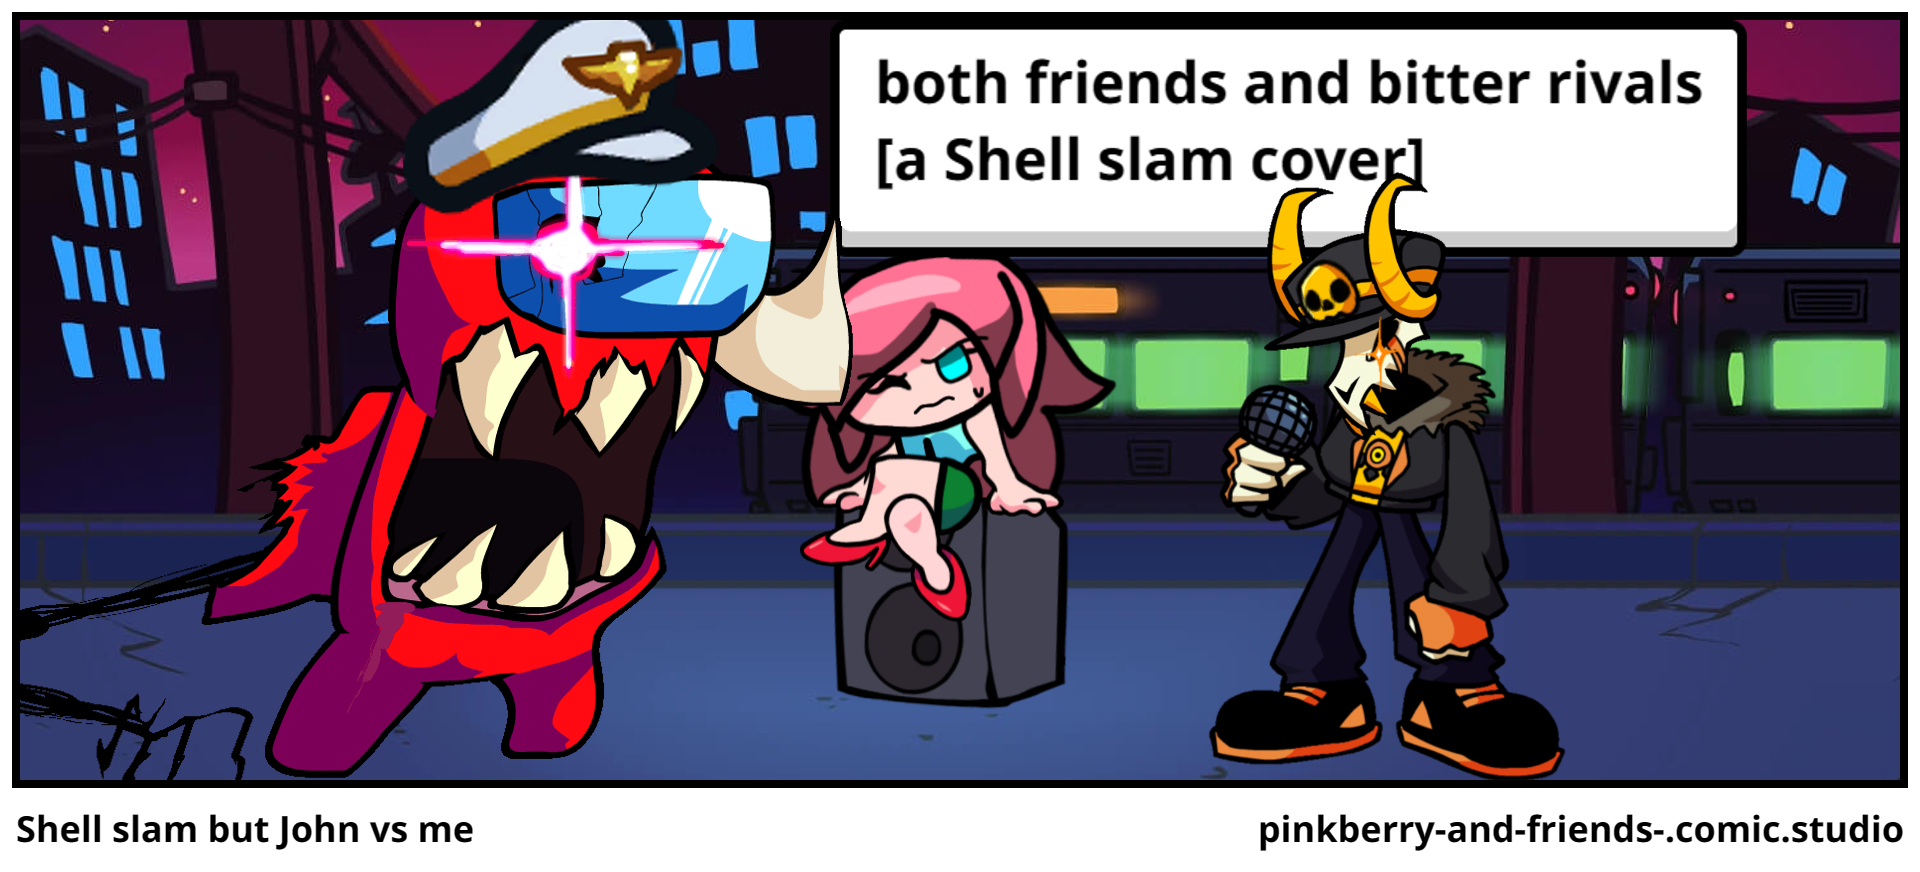 Shell slam but John vs me